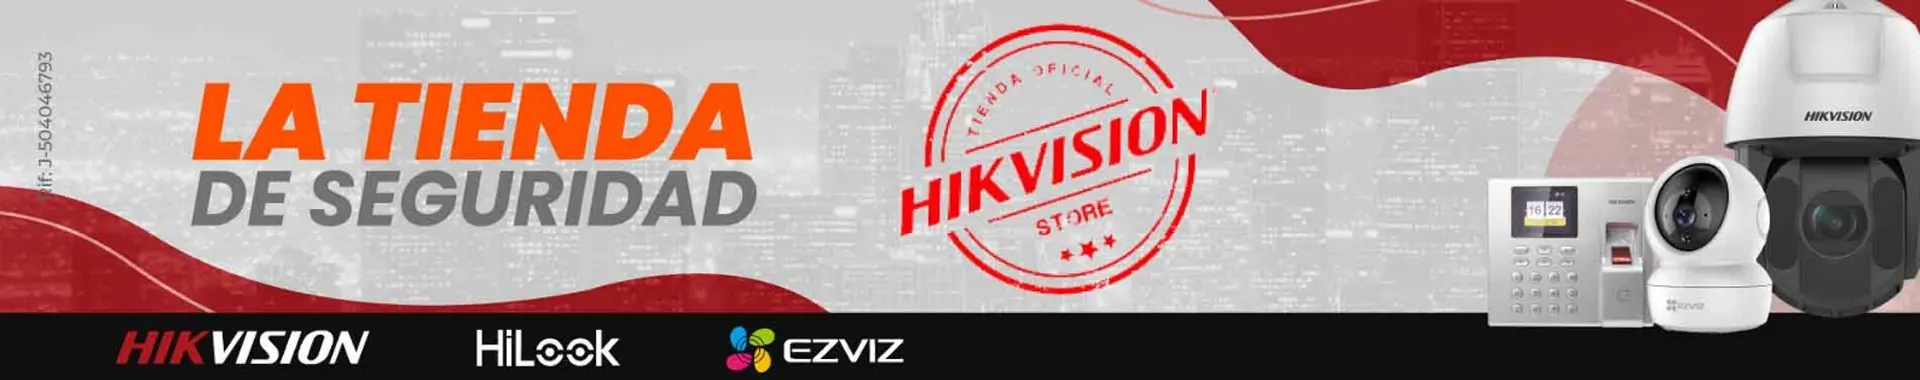 Imagen 1 del perfil de Hikvision Venezuela